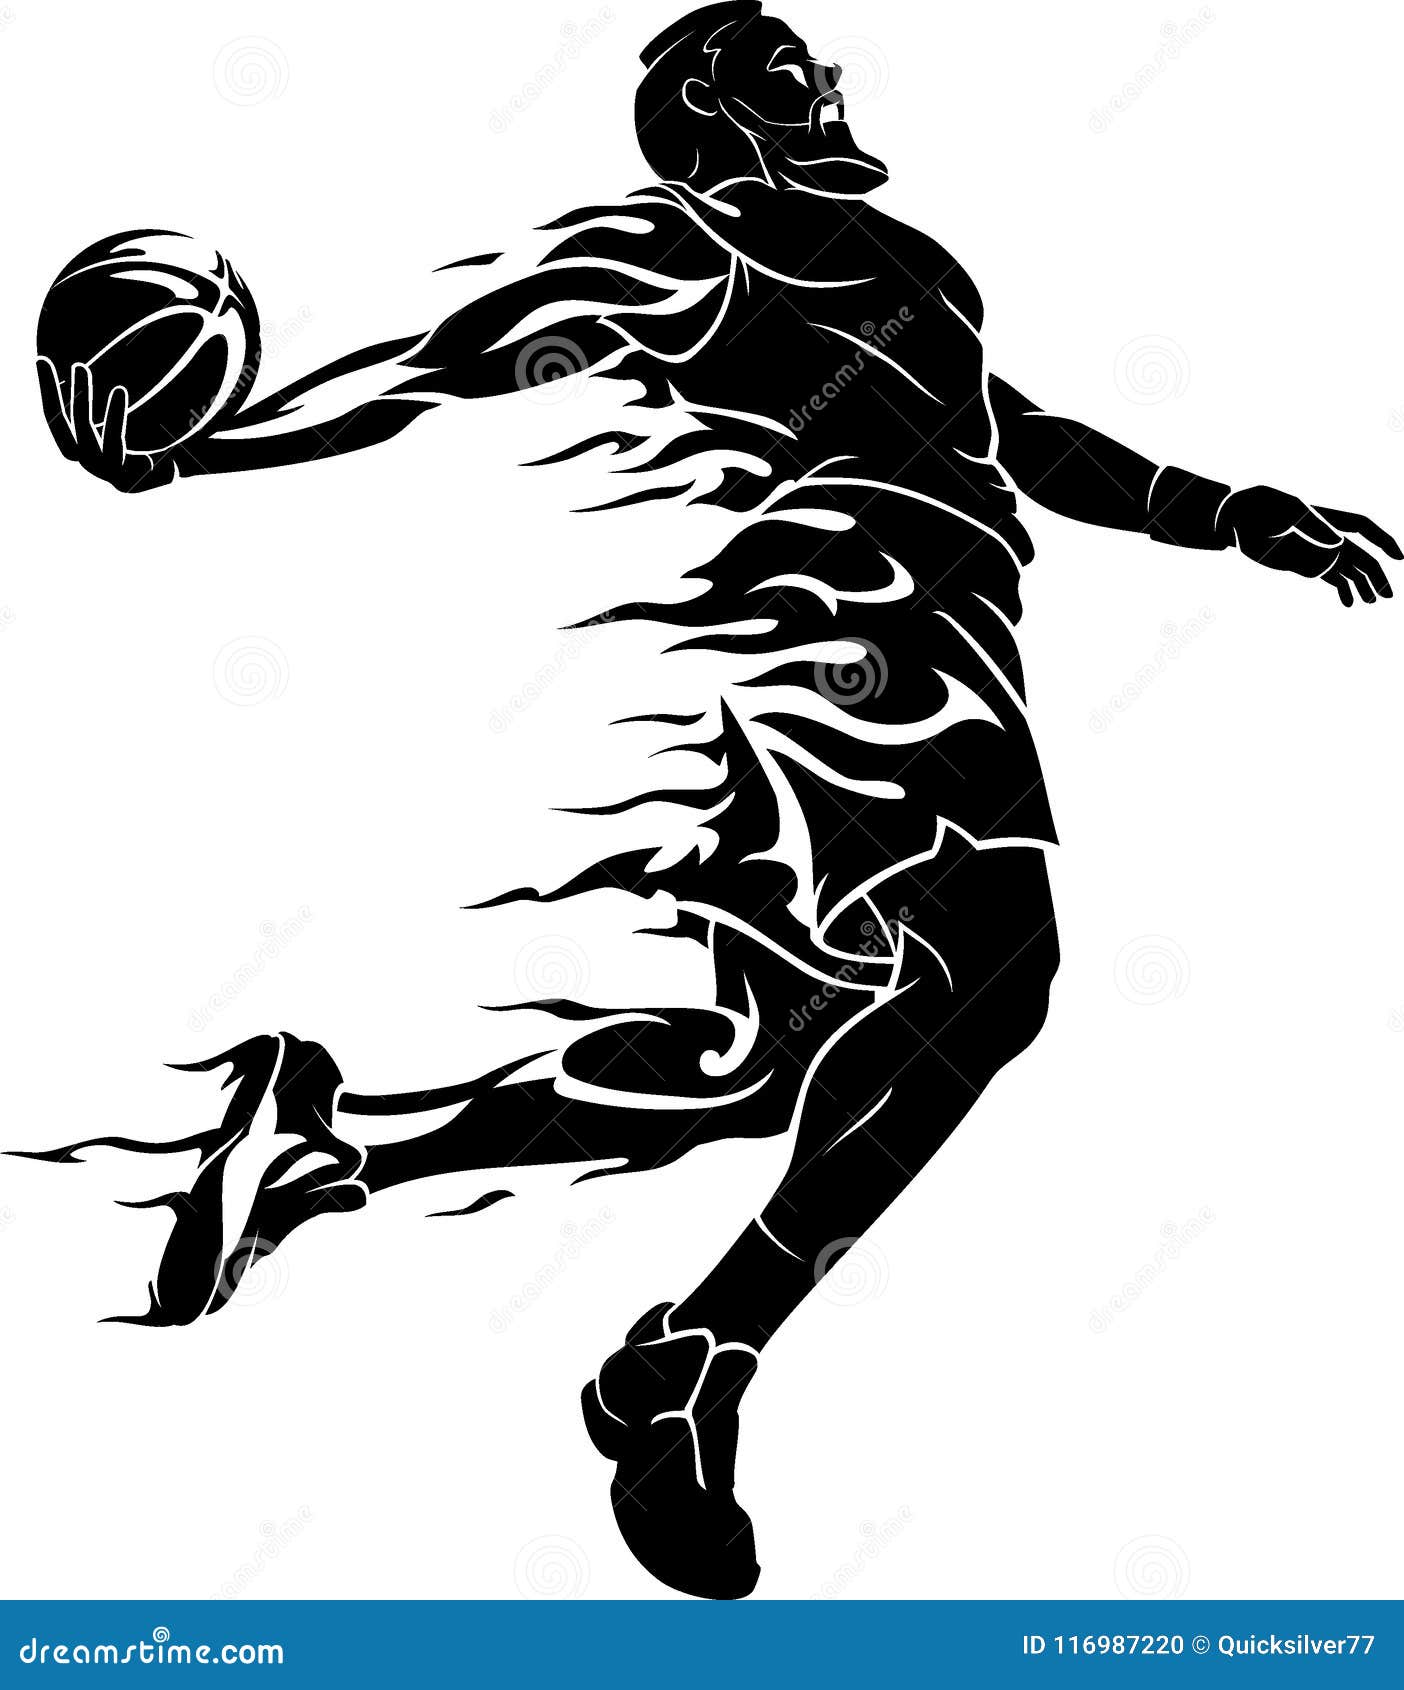 Art Basketball Dunk Cartoon Vector | CartoonDealer.com #55980489